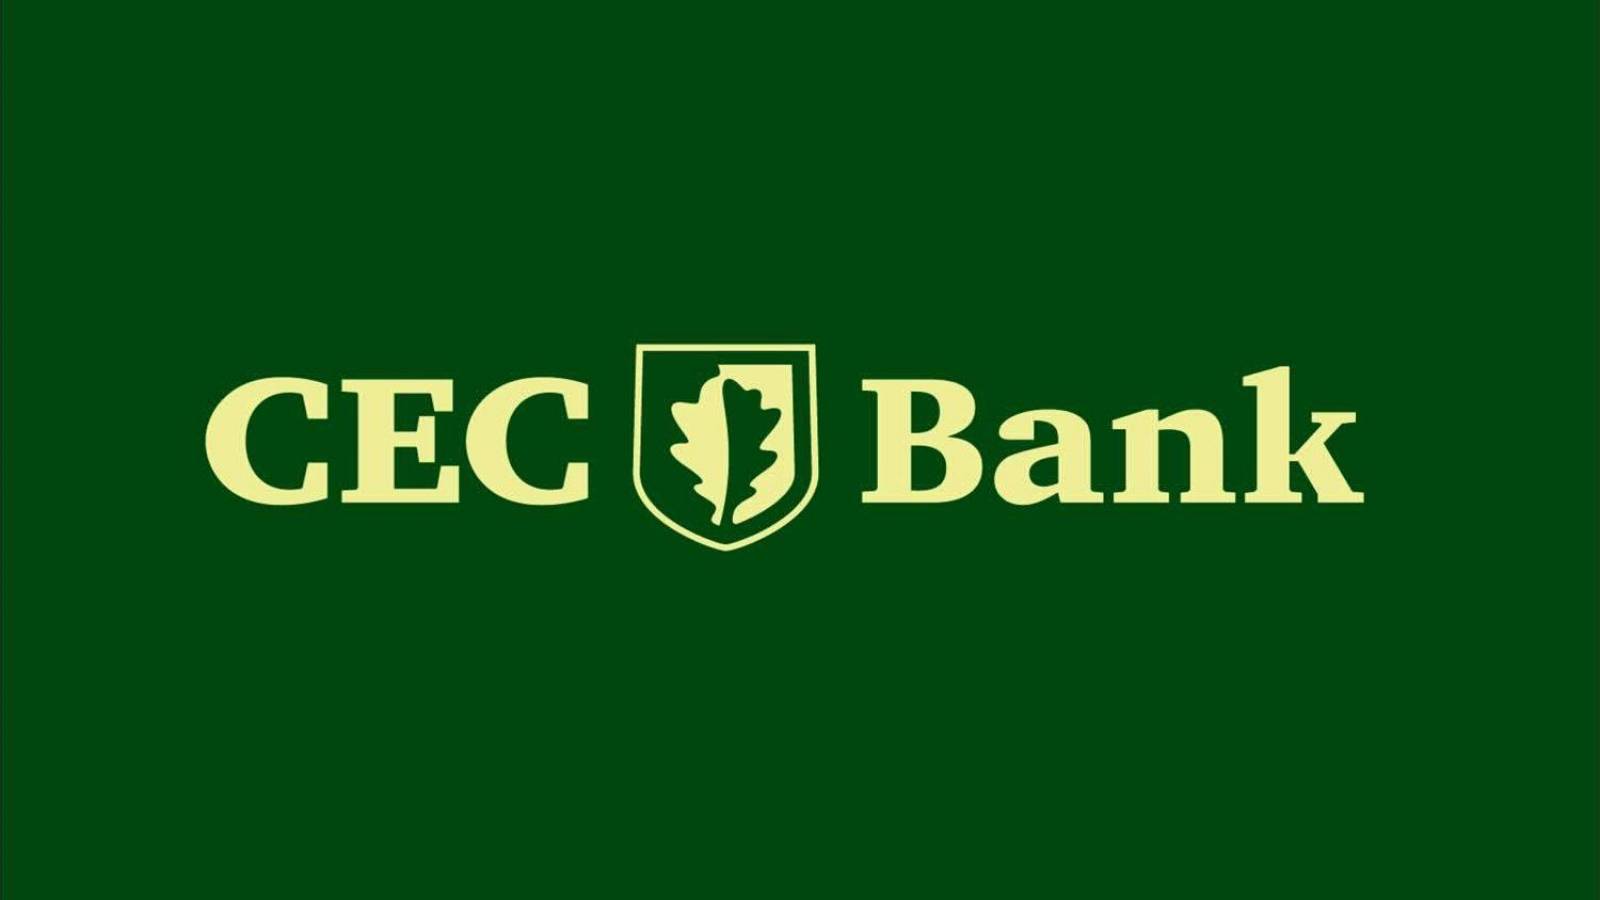 Banco CEC gratis